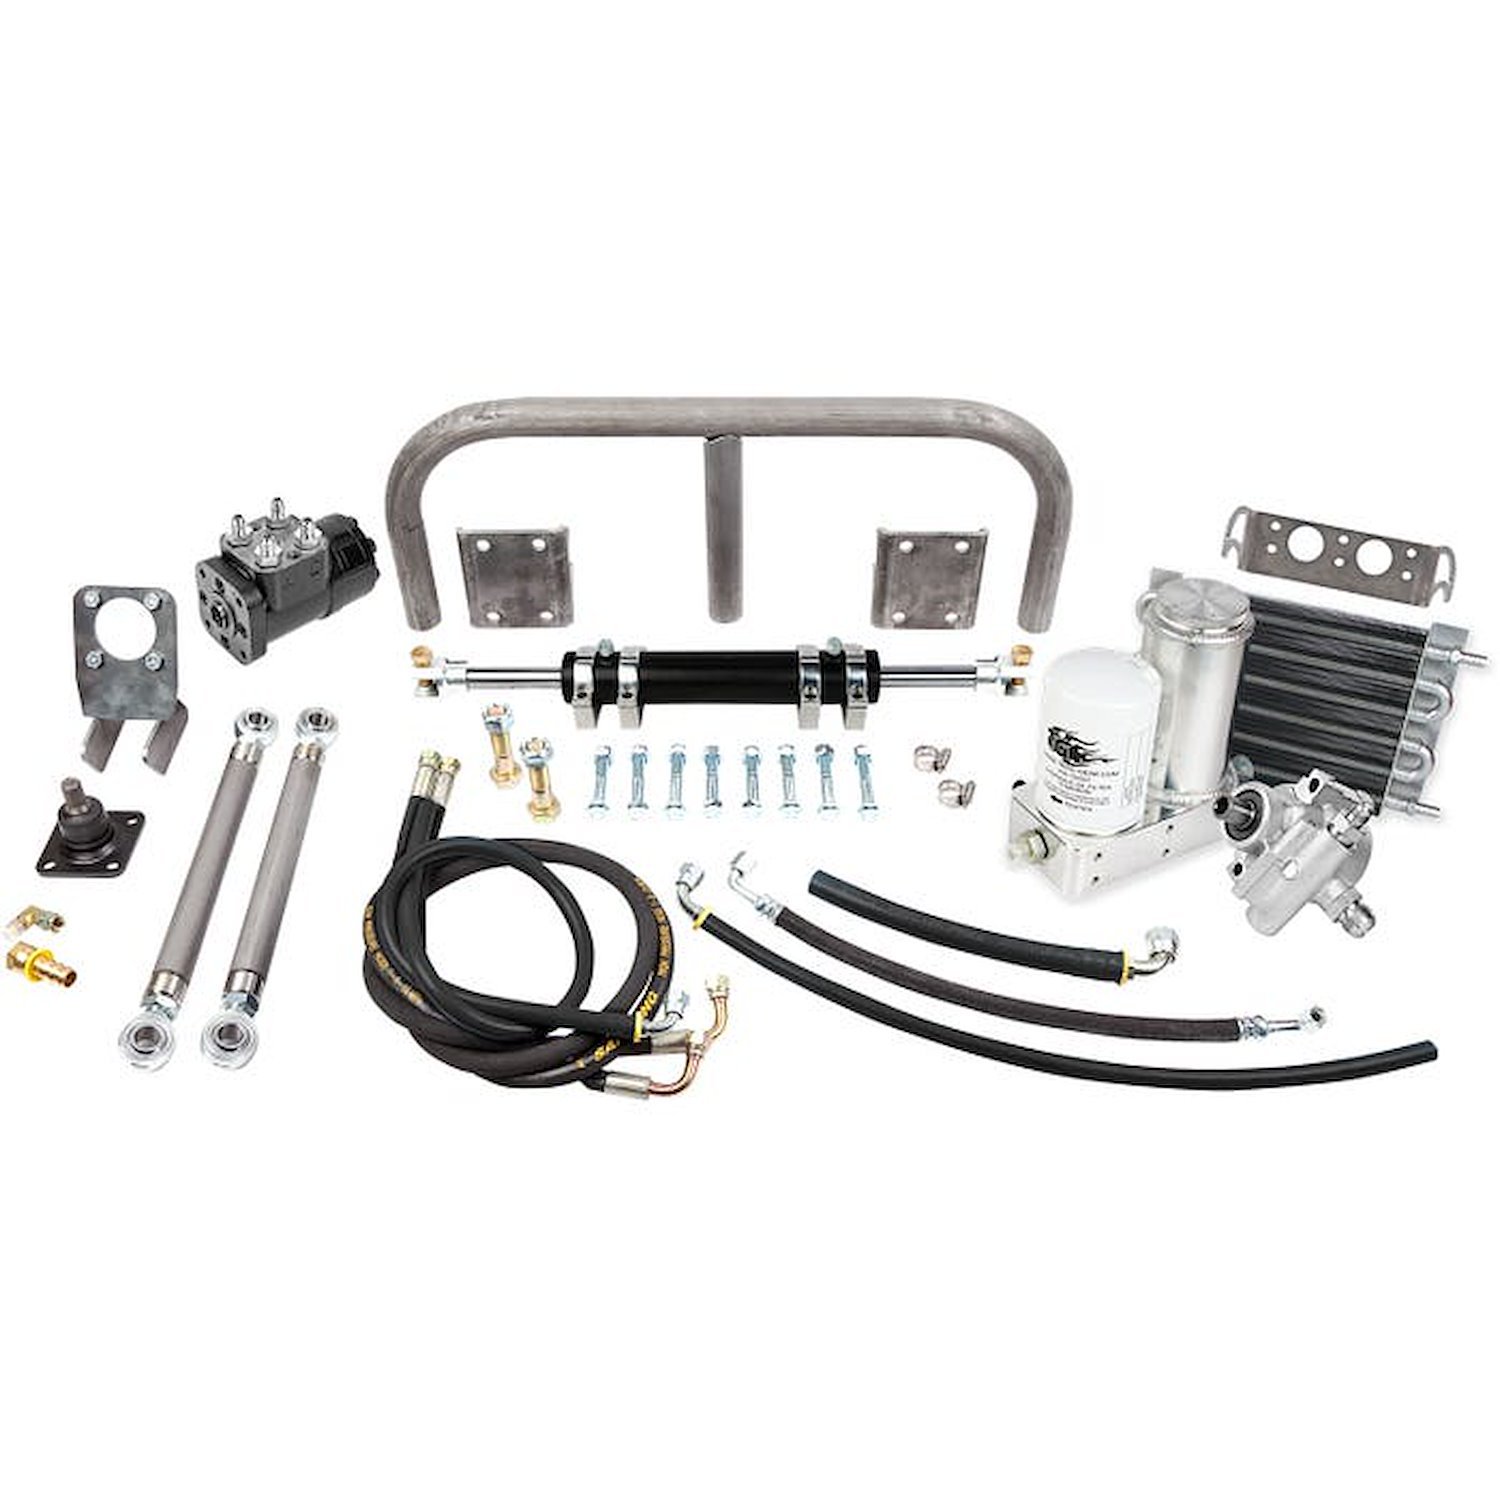 TGI-309376 Full Hydraulic Steering Kit, Universal - 6-Inch RAM